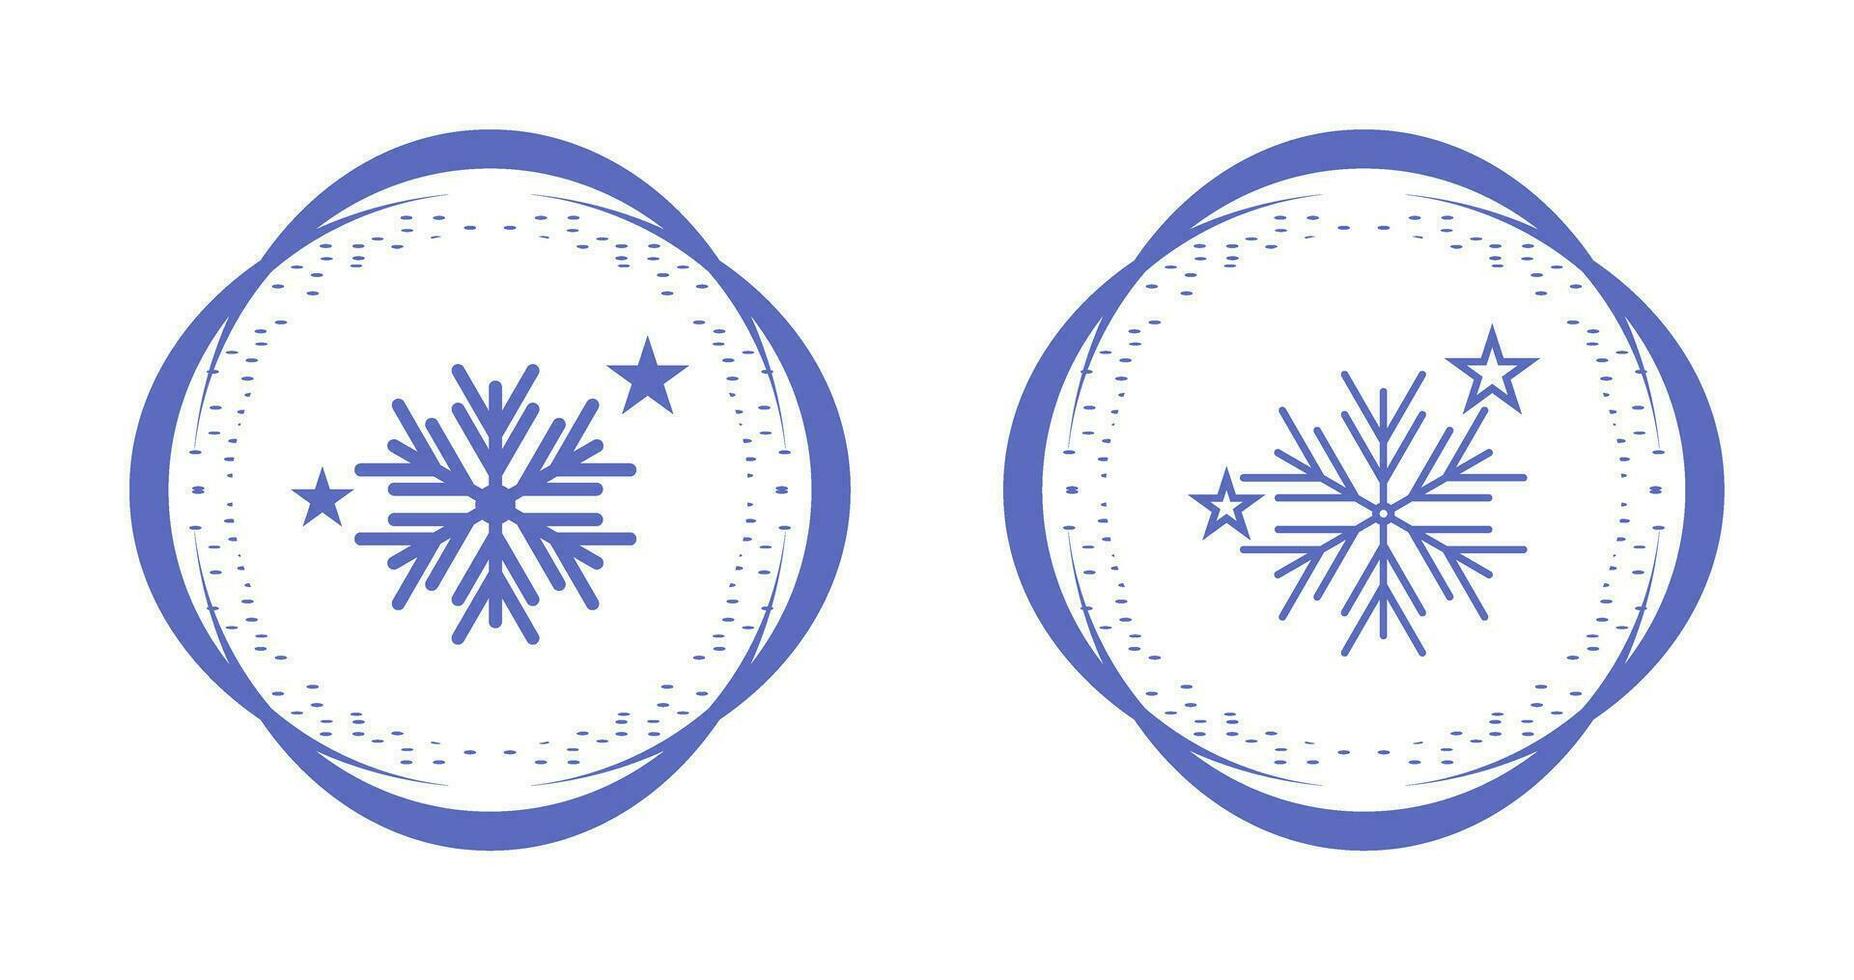 ícone de vetor de flocos de neve